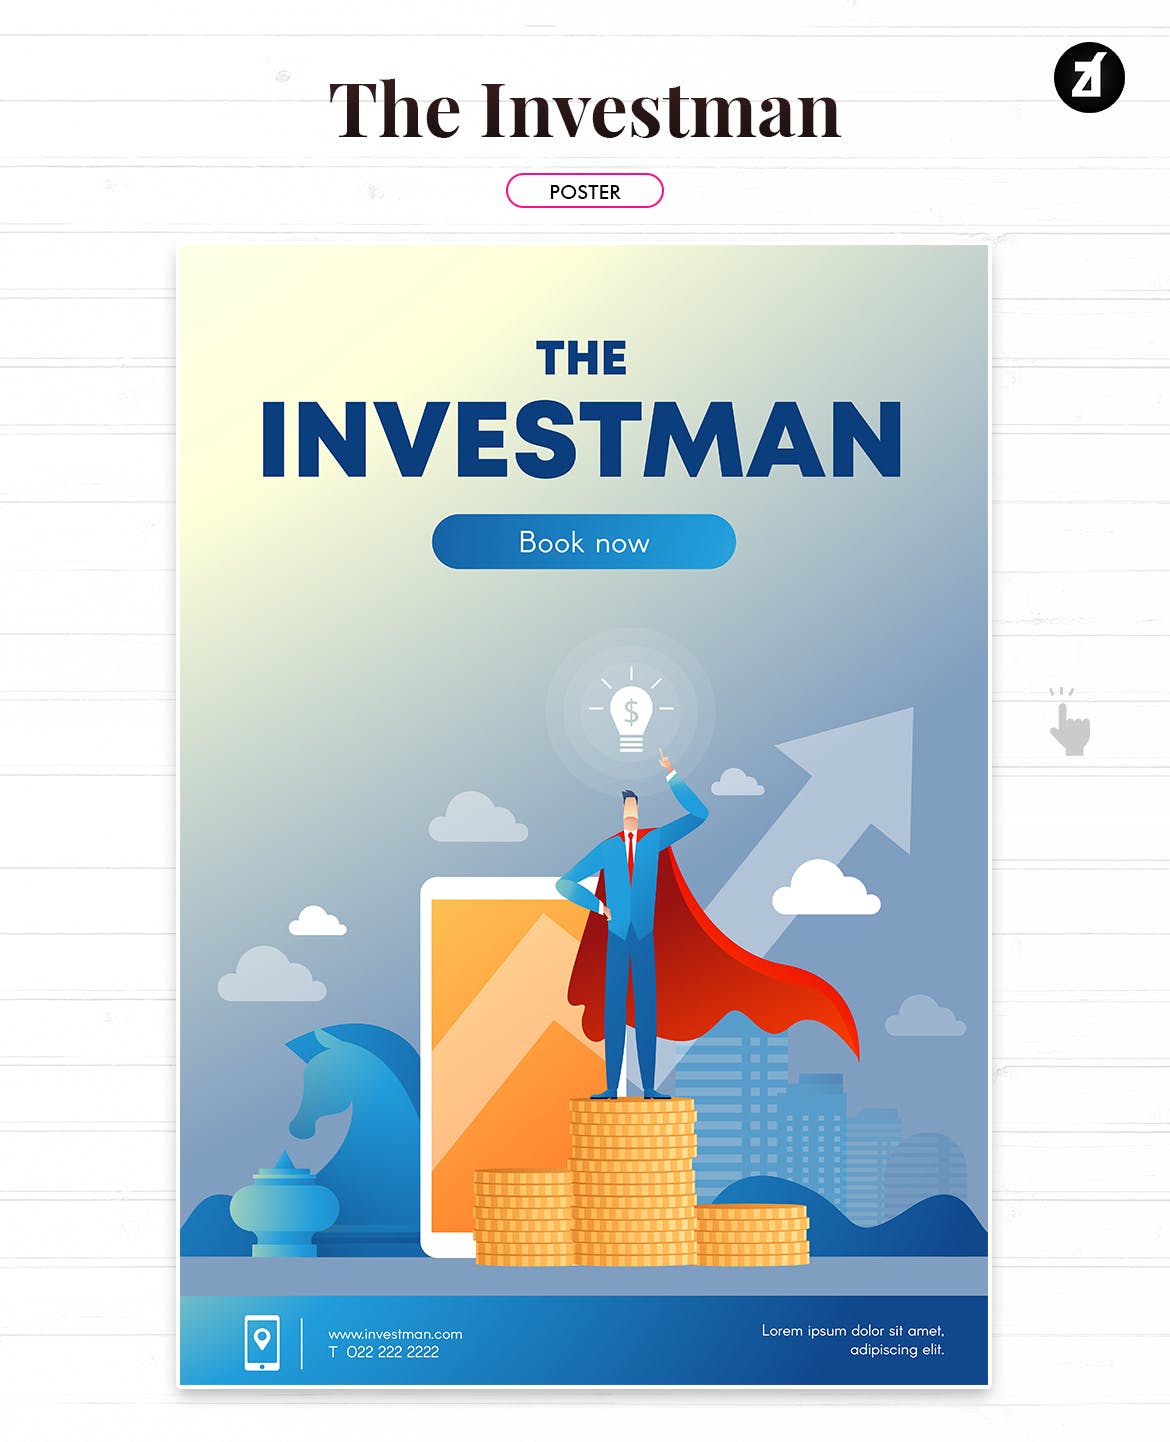 投资者主题矢量蚂蚁素材精选概念插画素材 The investman illustration with text layout插图(1)